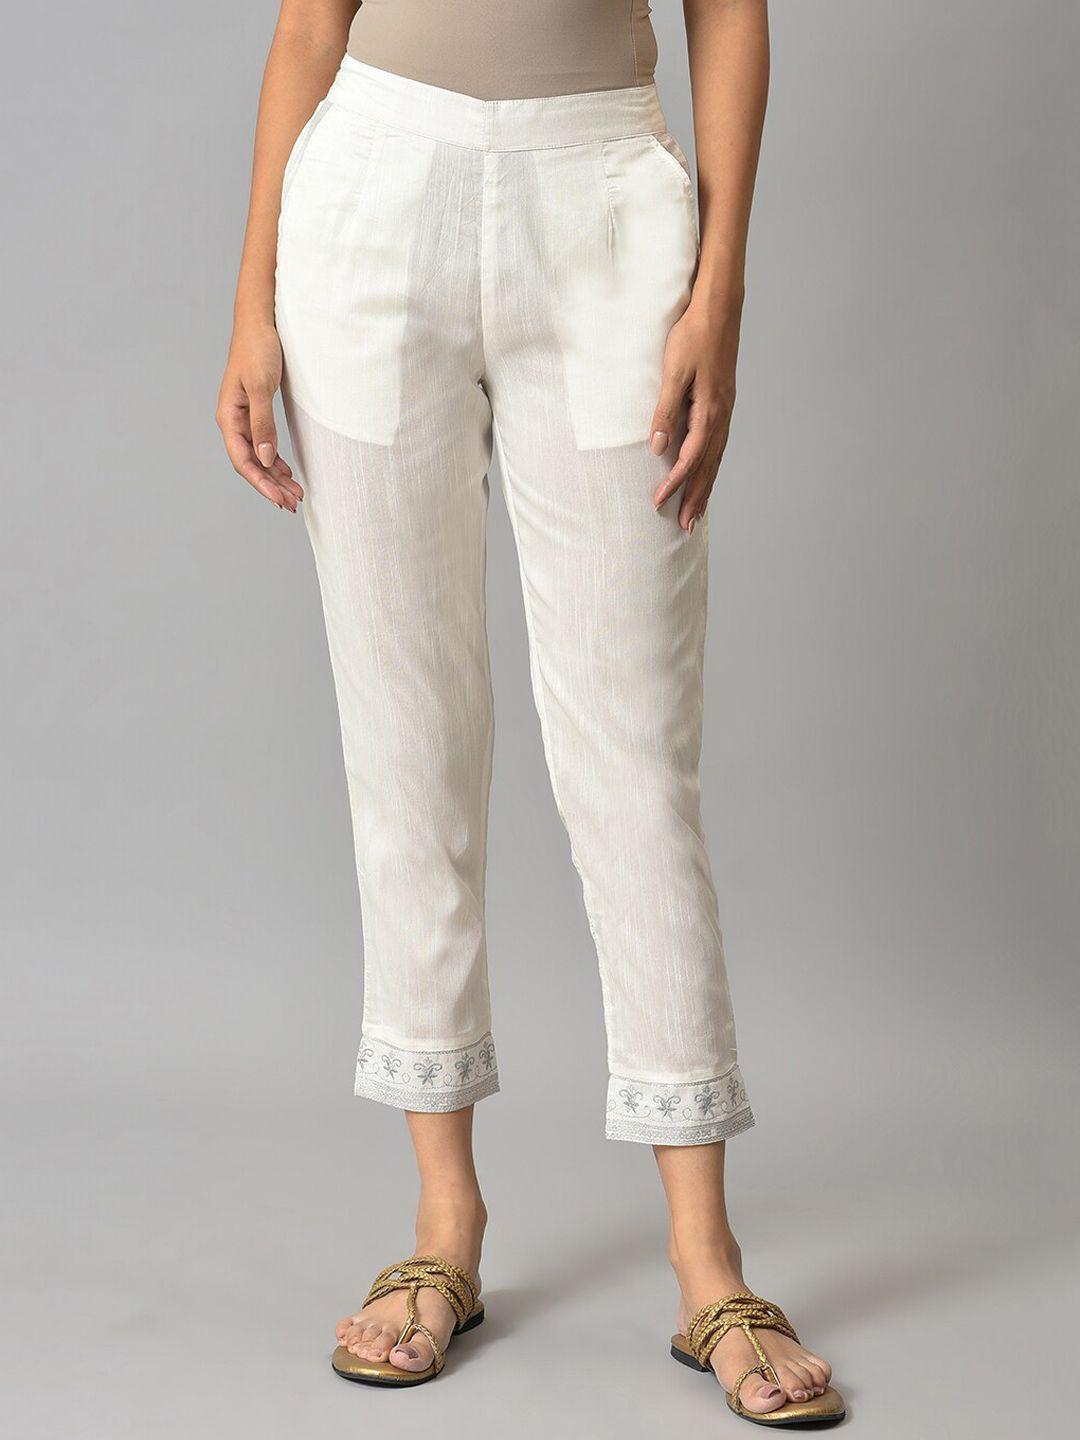 elleven women white pleated trousers